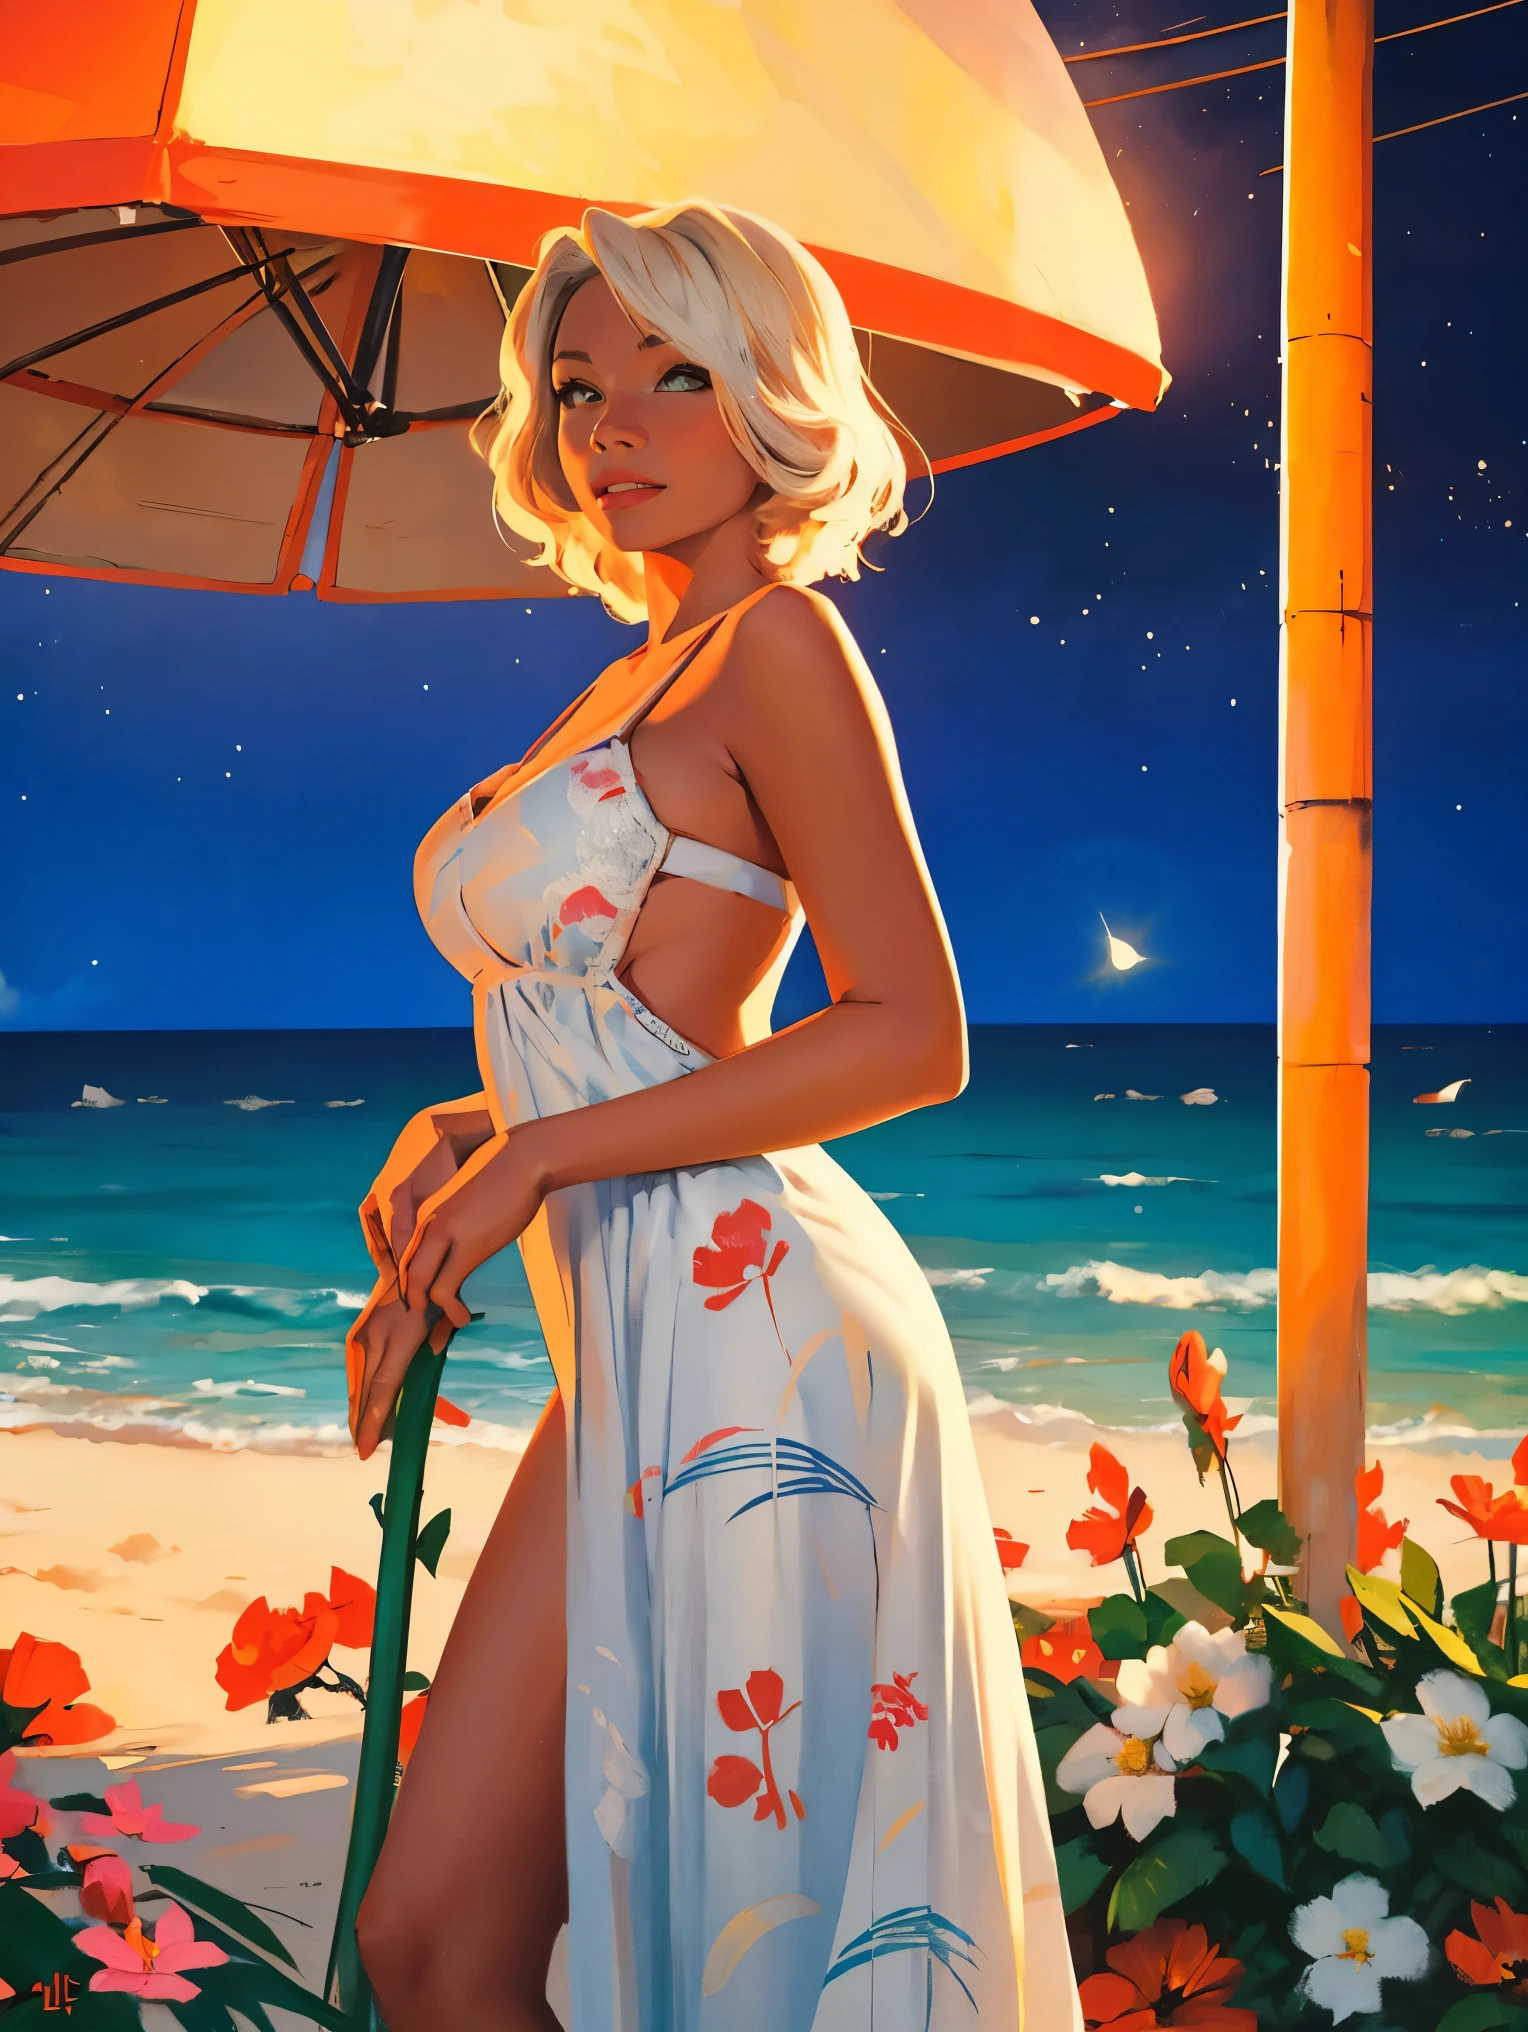 오래된 복고풍 포스터, 소련,  카리브 해변,((밤에)). 네온, 사진 촬영, 1 매우 화끈한 아름다운 여성. 23세. 행복하다. 짧은 흰색 웨이브 머리, 표정이 풍부한 가슴, 직물에 꽃 무늬가 있는 흰색 선드레스를 입고, 패셔니스타, 80년대, HD